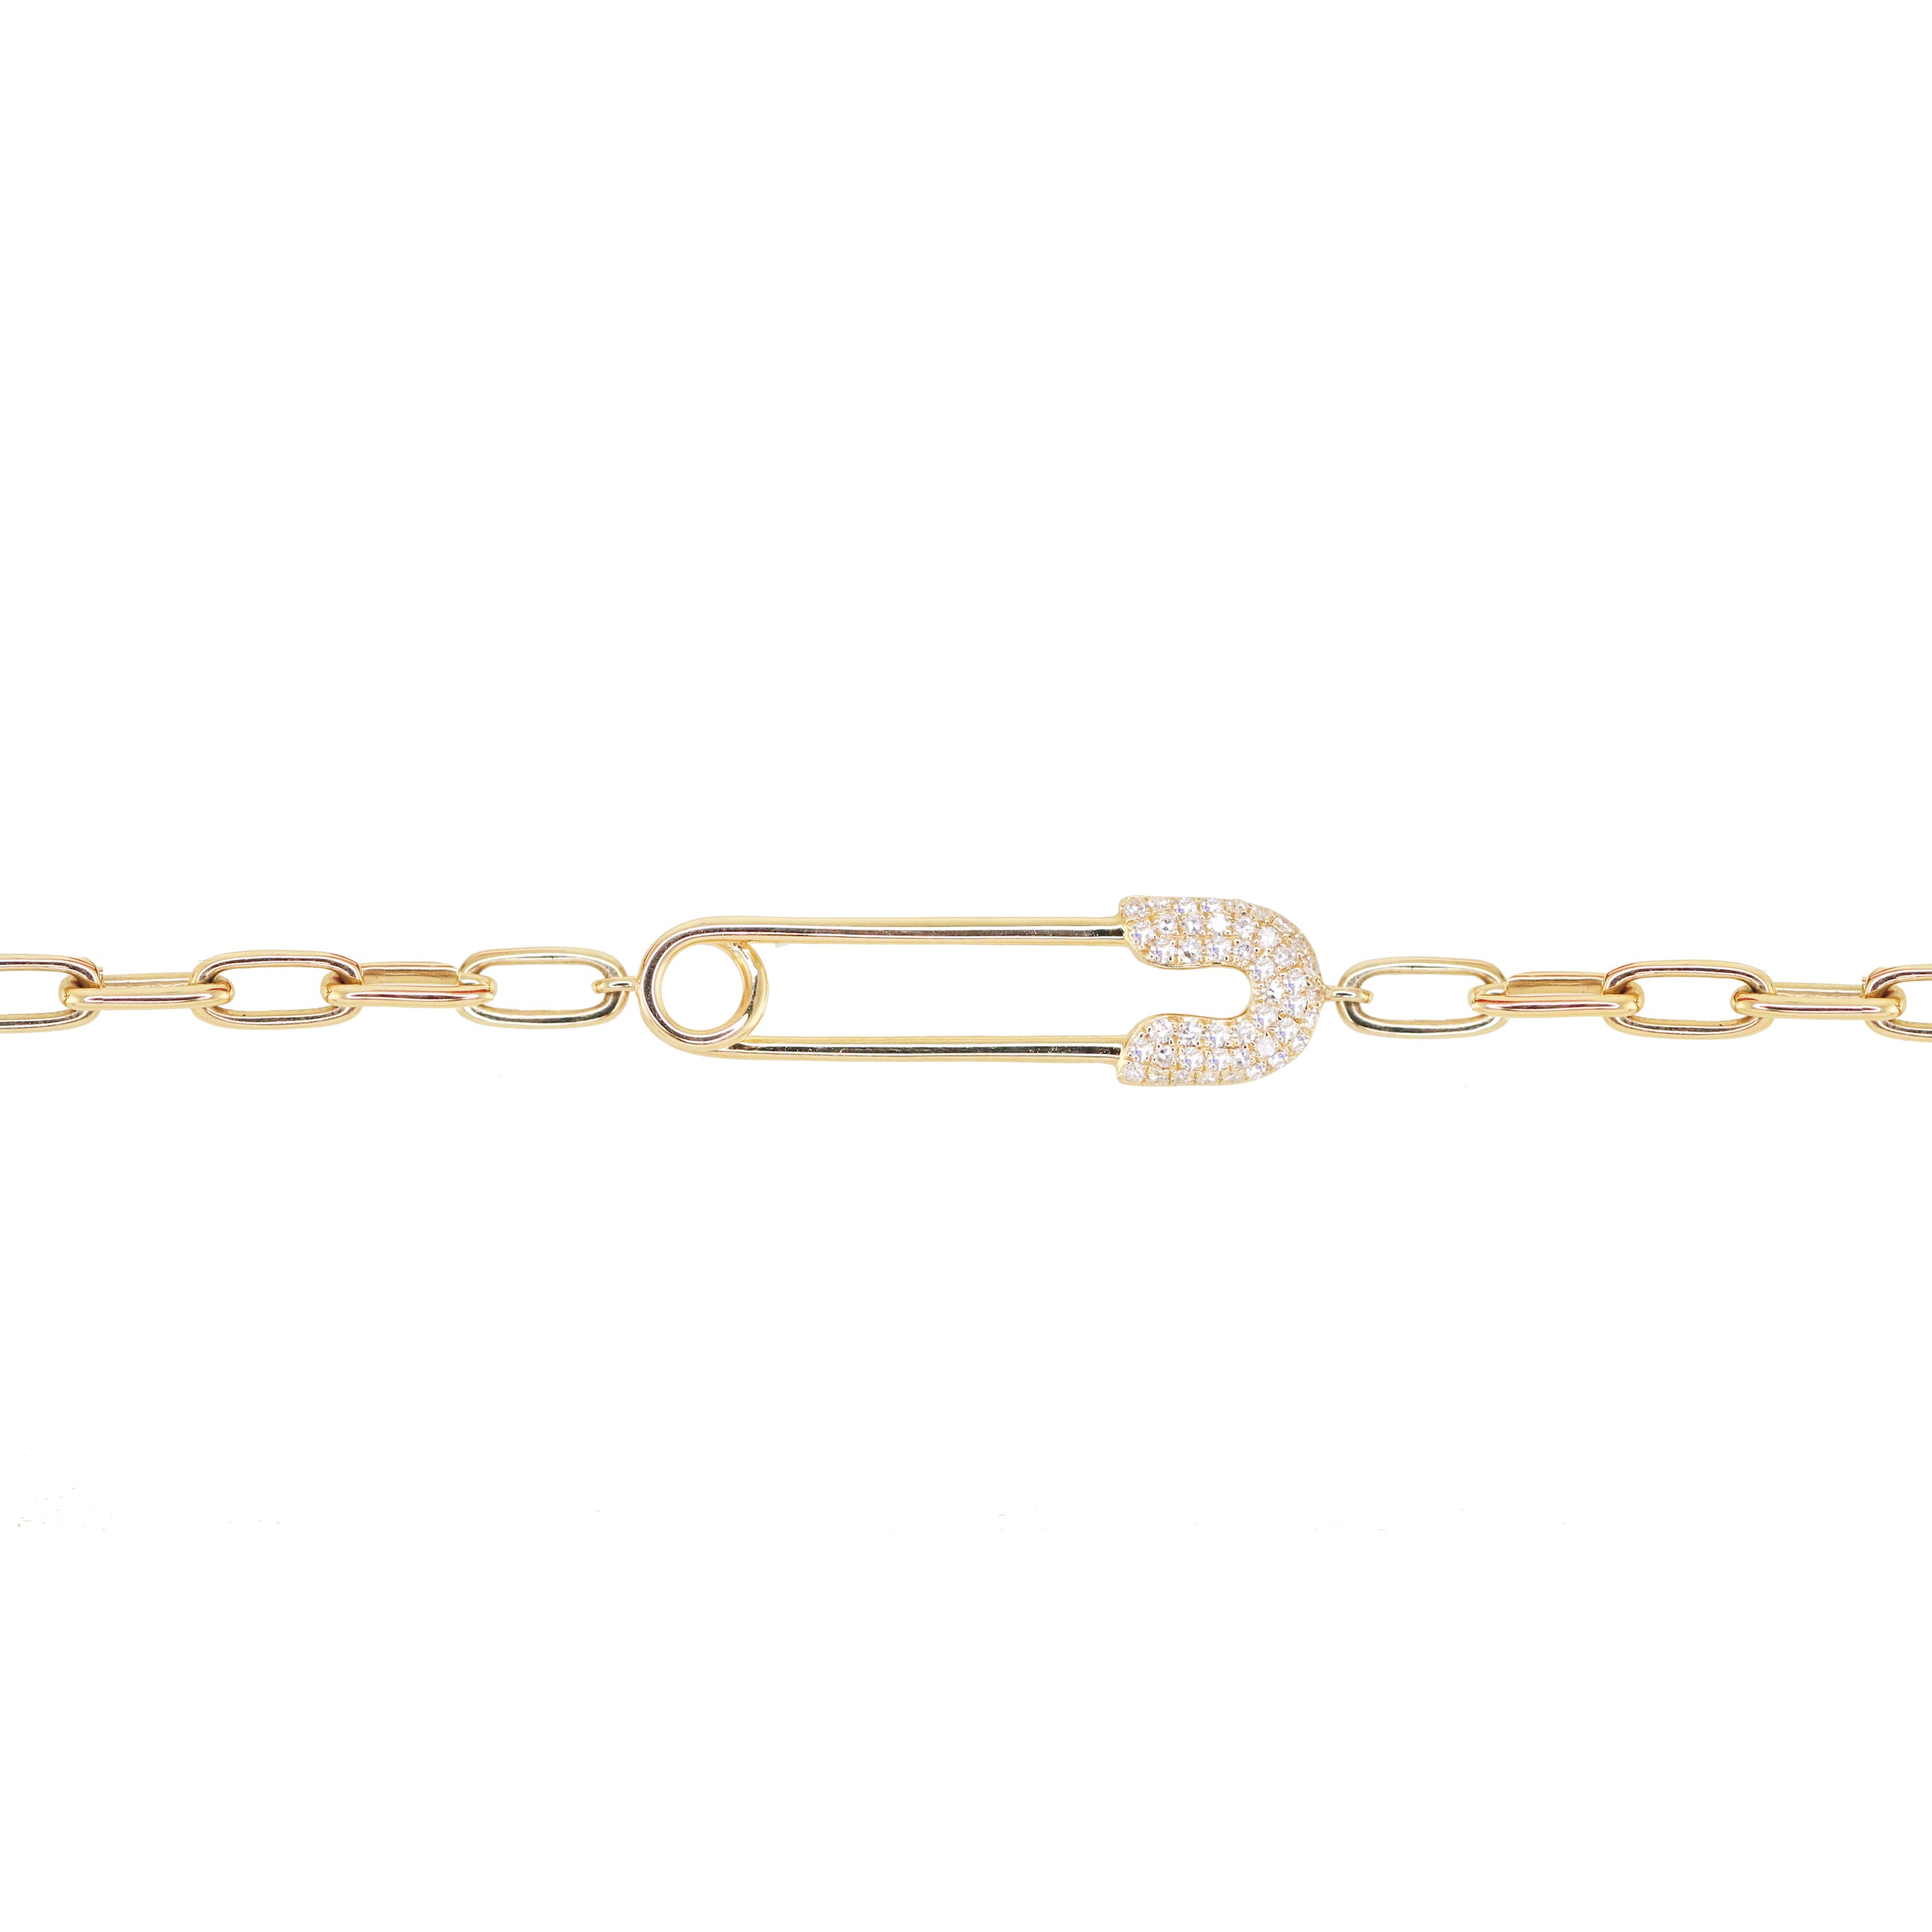 14kt gold and diamond safety pin paperclip chain bracelet | Luna Skye